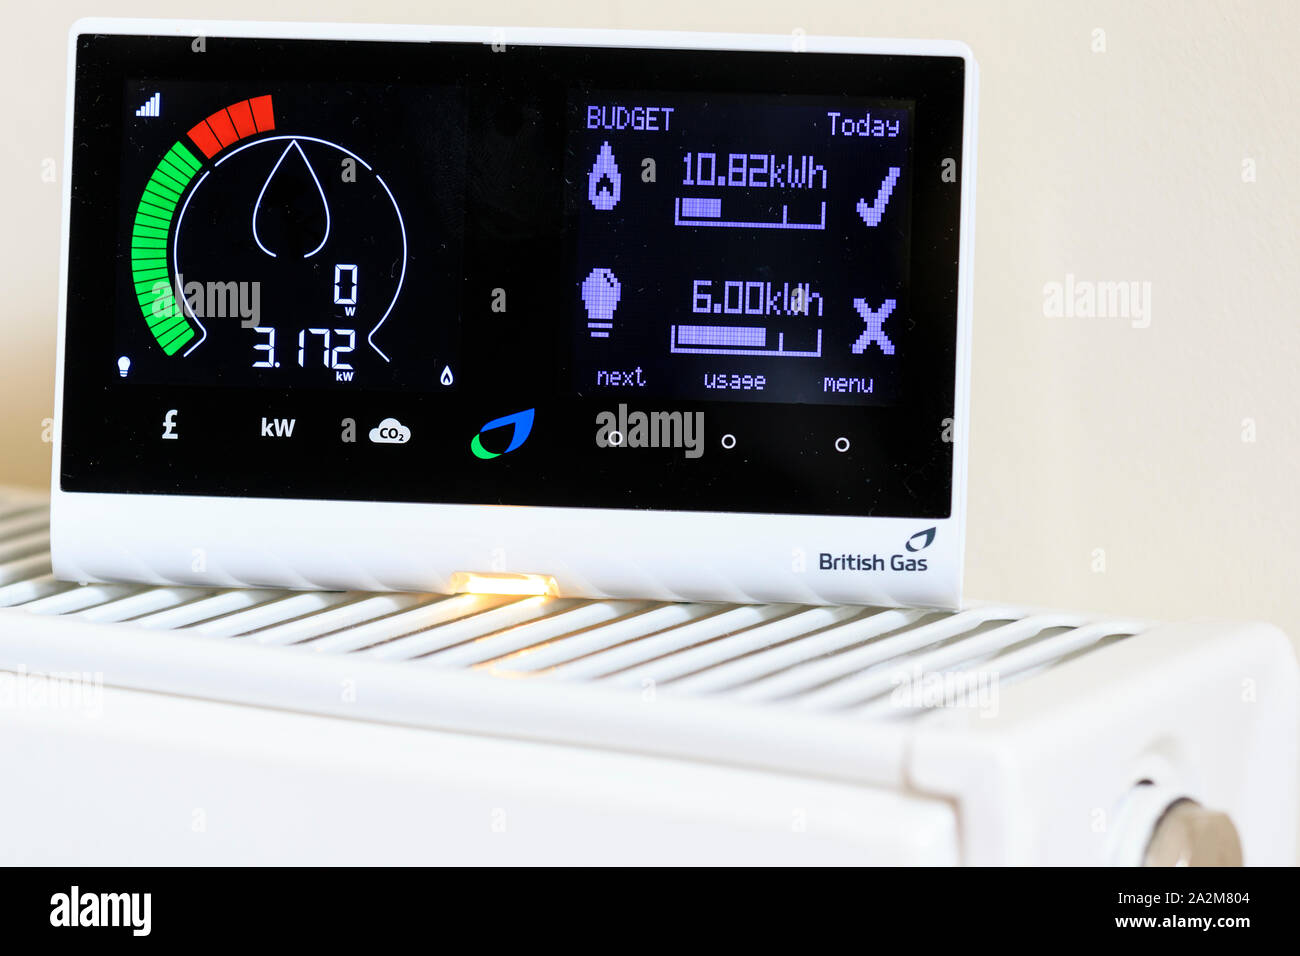 Famiglia British Gas smart meter sul radiatore elettrico del monitor e il consumo di gas con conseguente risparmio di denaro per i residenti. Mostra ad alto consumo energetico. Foto Stock